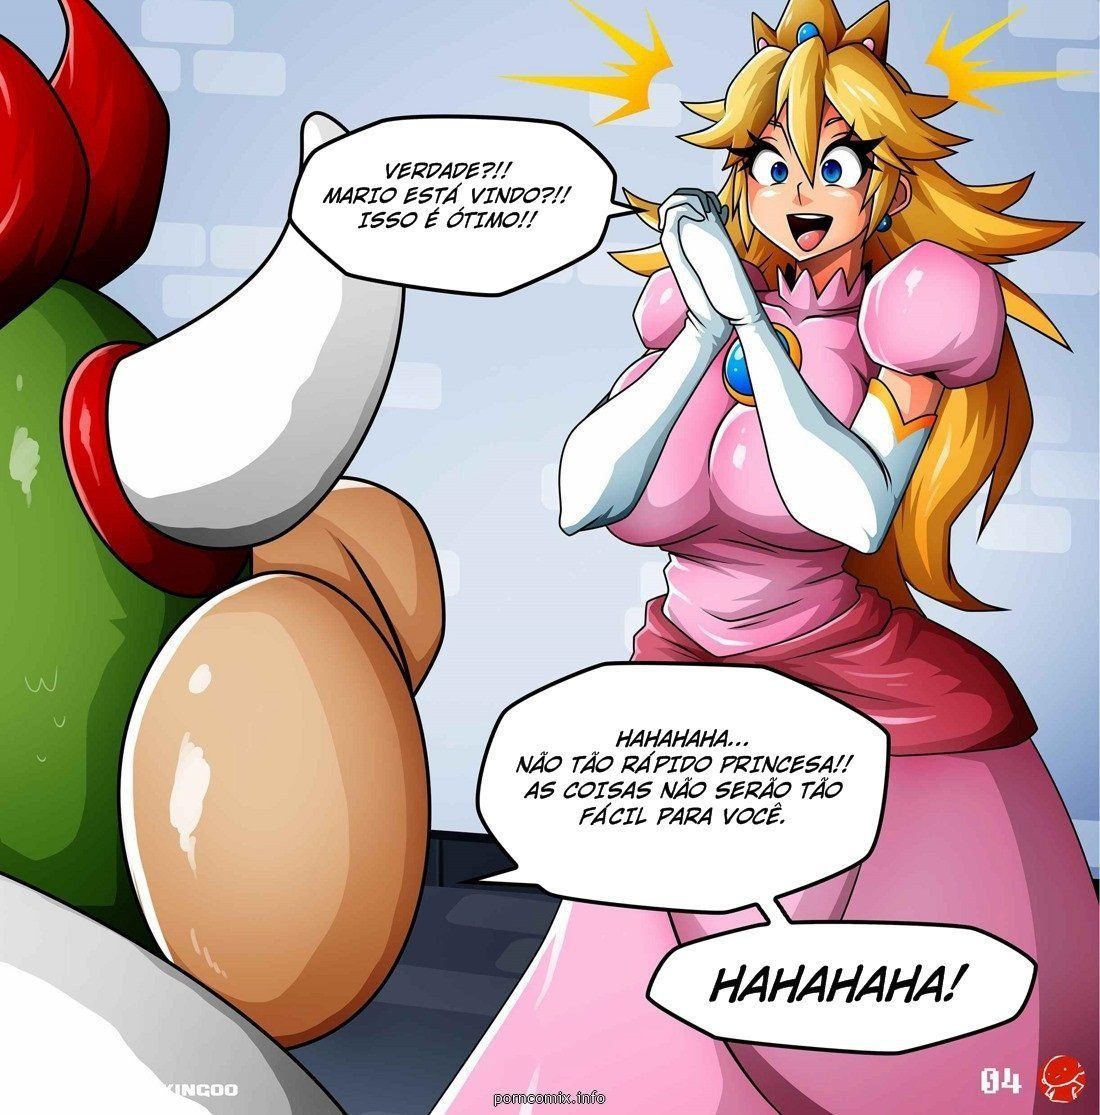 Peach Porn Comics - Princess Peach - Help Me Mario! - Cartoon Porno - Quadrinhos ...